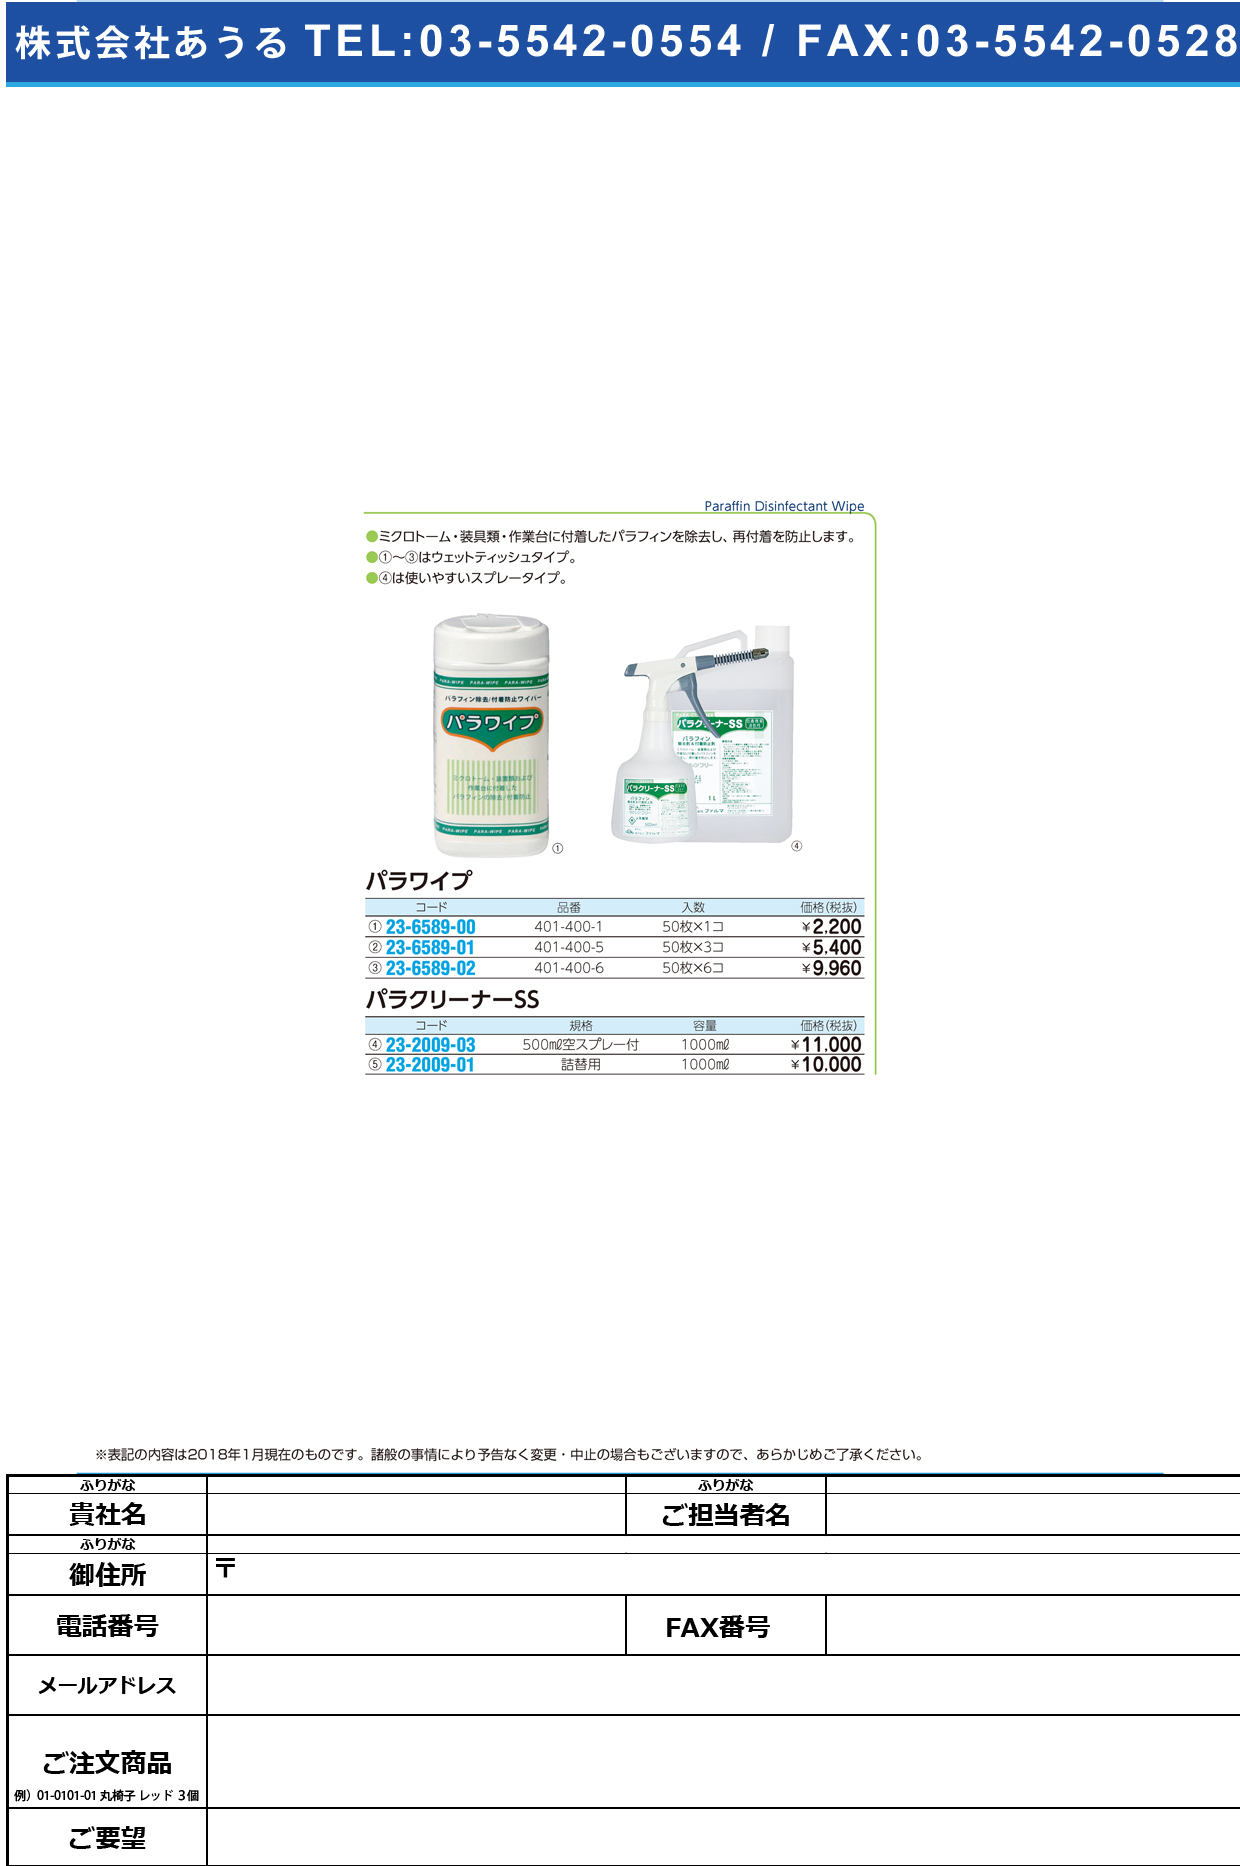 (23-2009-03)パラクリーナーＳＳ 1000ML(500MLｶﾗｽﾌﾟﾚｰﾂ ﾊﾟﾗｸﾘｰﾅｰSS【1本単位】【2018年カタログ商品】